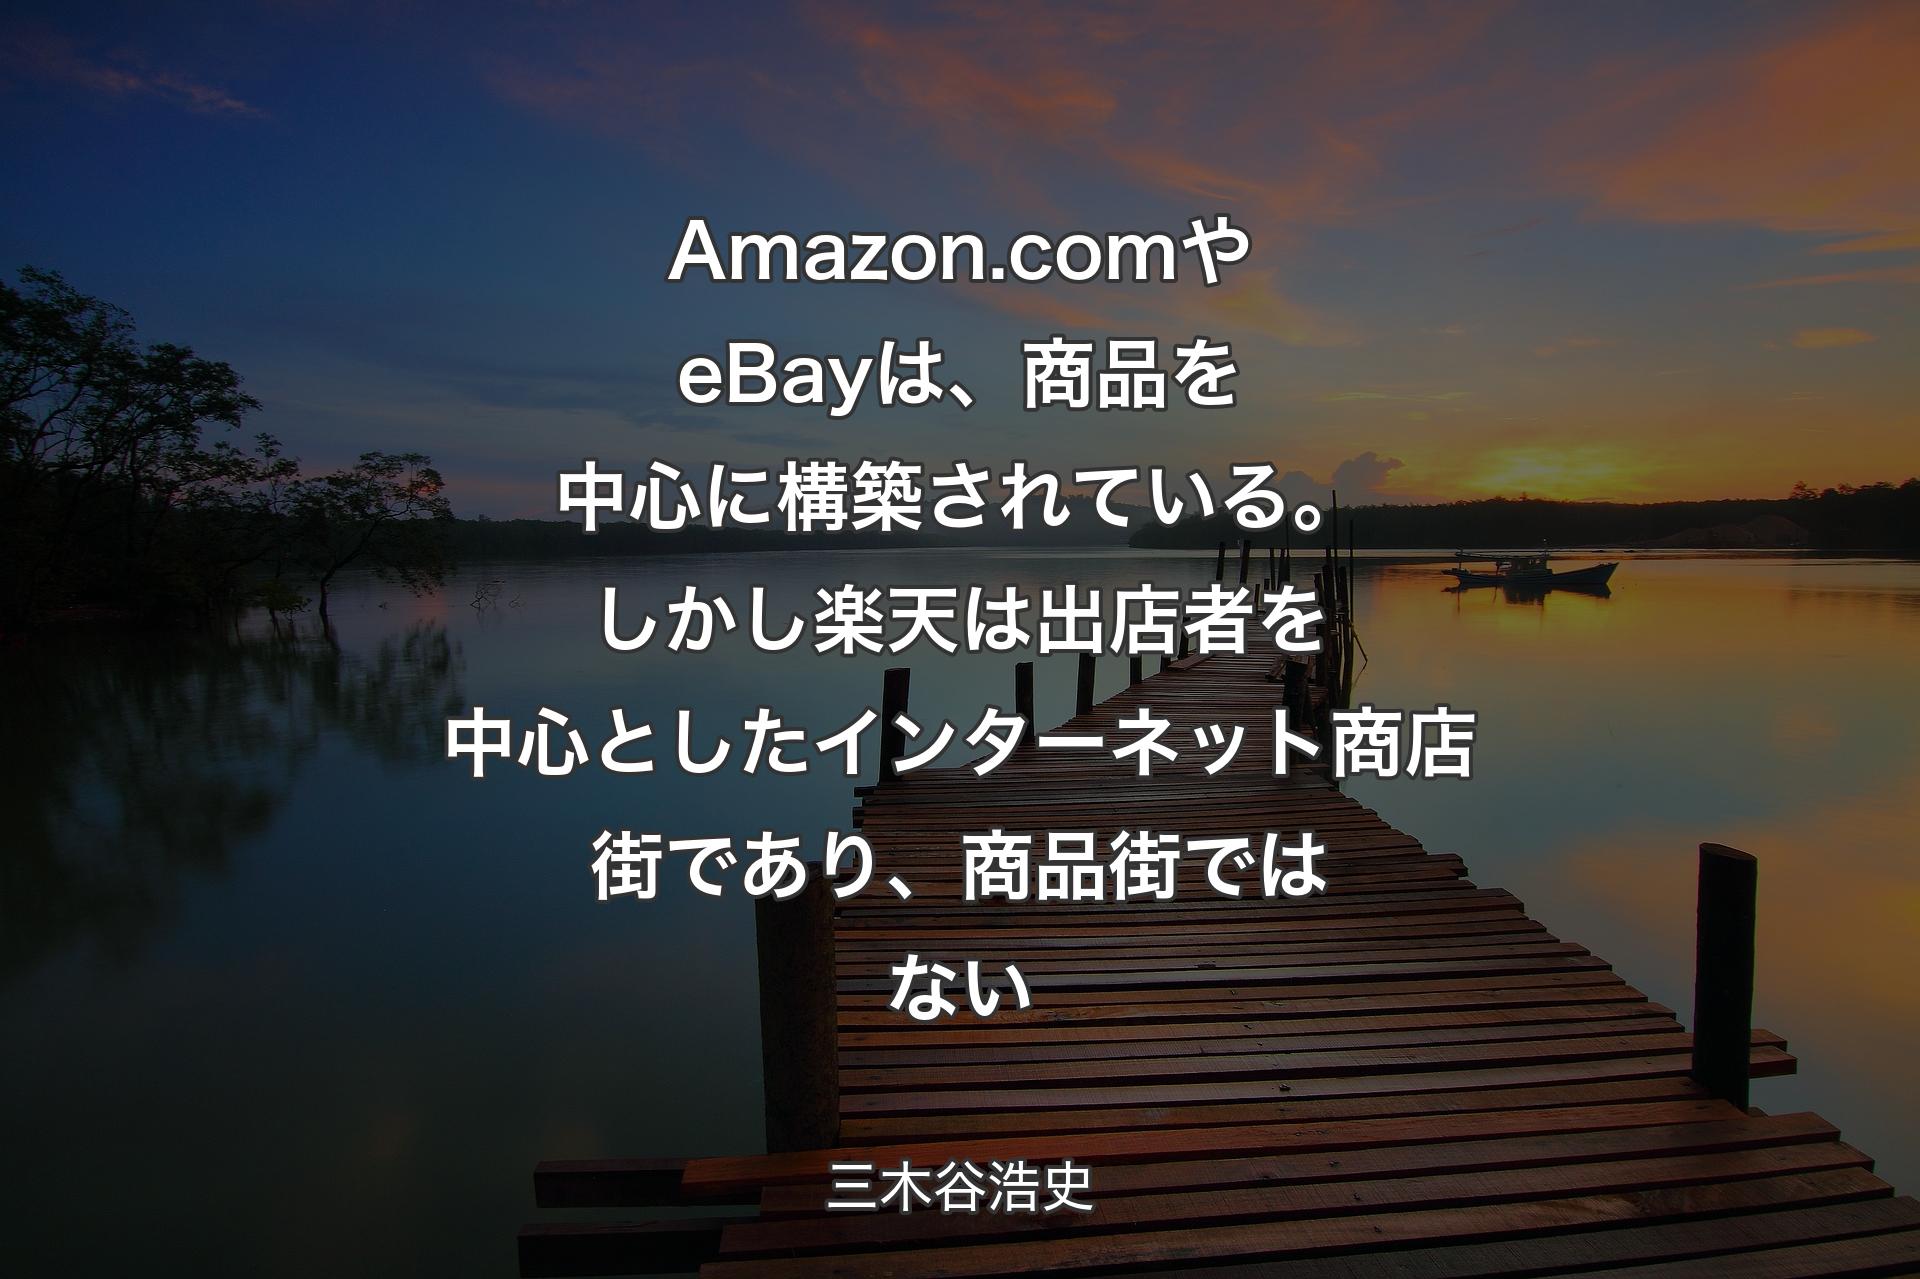 【背景3】Amazon.com やeBayは、商品を中心に構築されている。しかし楽天は出店者を中心としたインターネット商店街であり、商品街ではない - 三木谷浩史